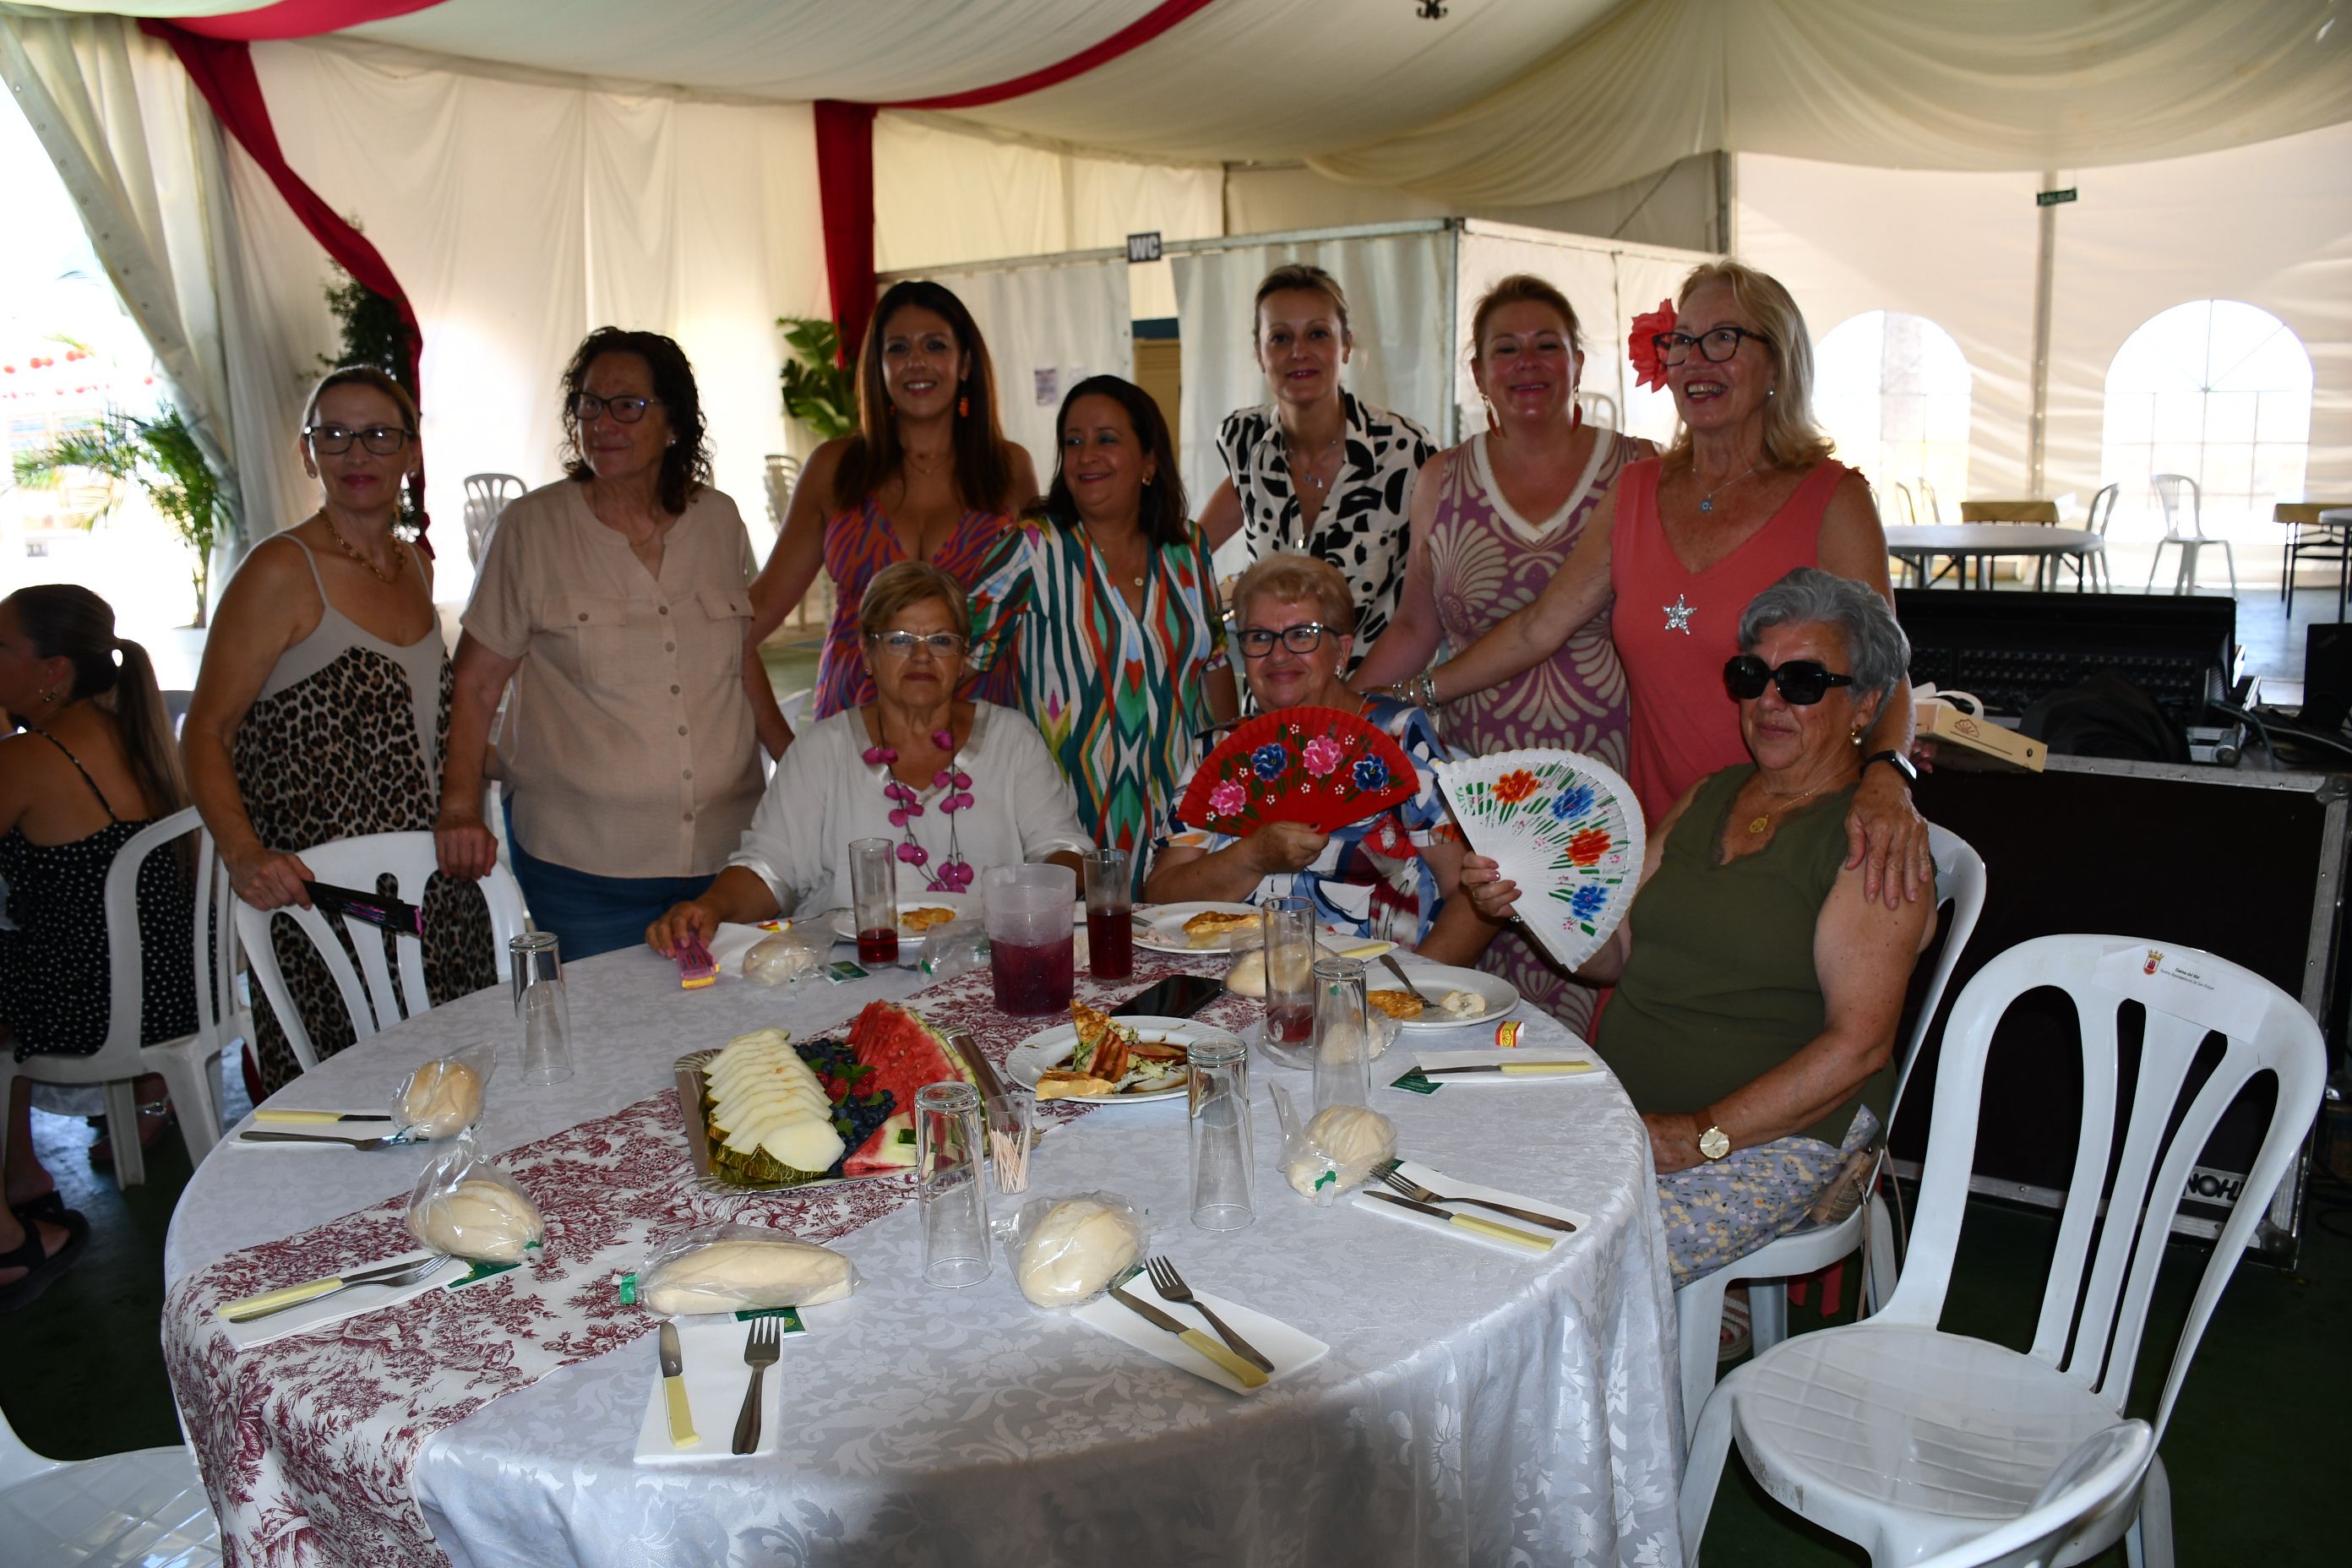 Buen ambiente y mucha diversión en la Comida de las Mujeres de la Feria de Torreguadiaro